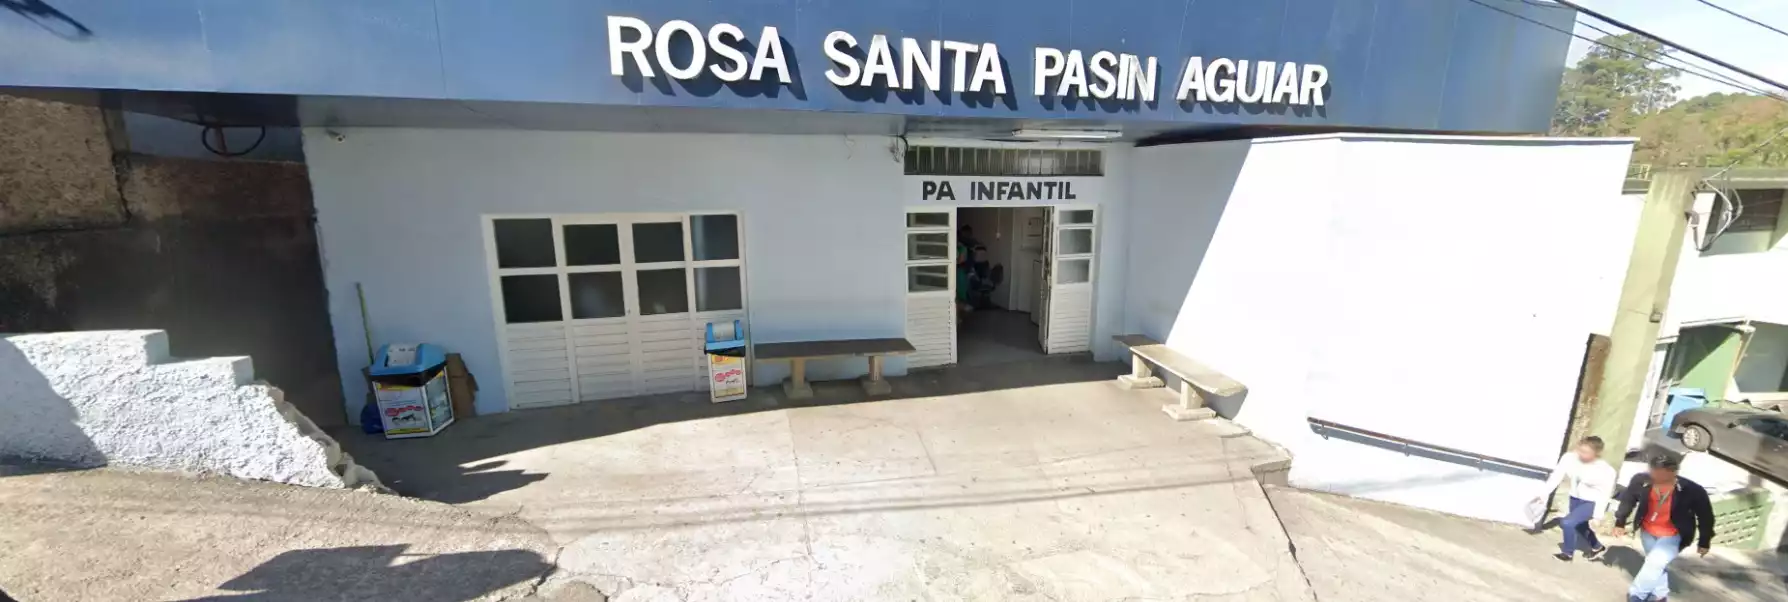 Velório Hospital Mista Rosa Santa Pasin Aguiar